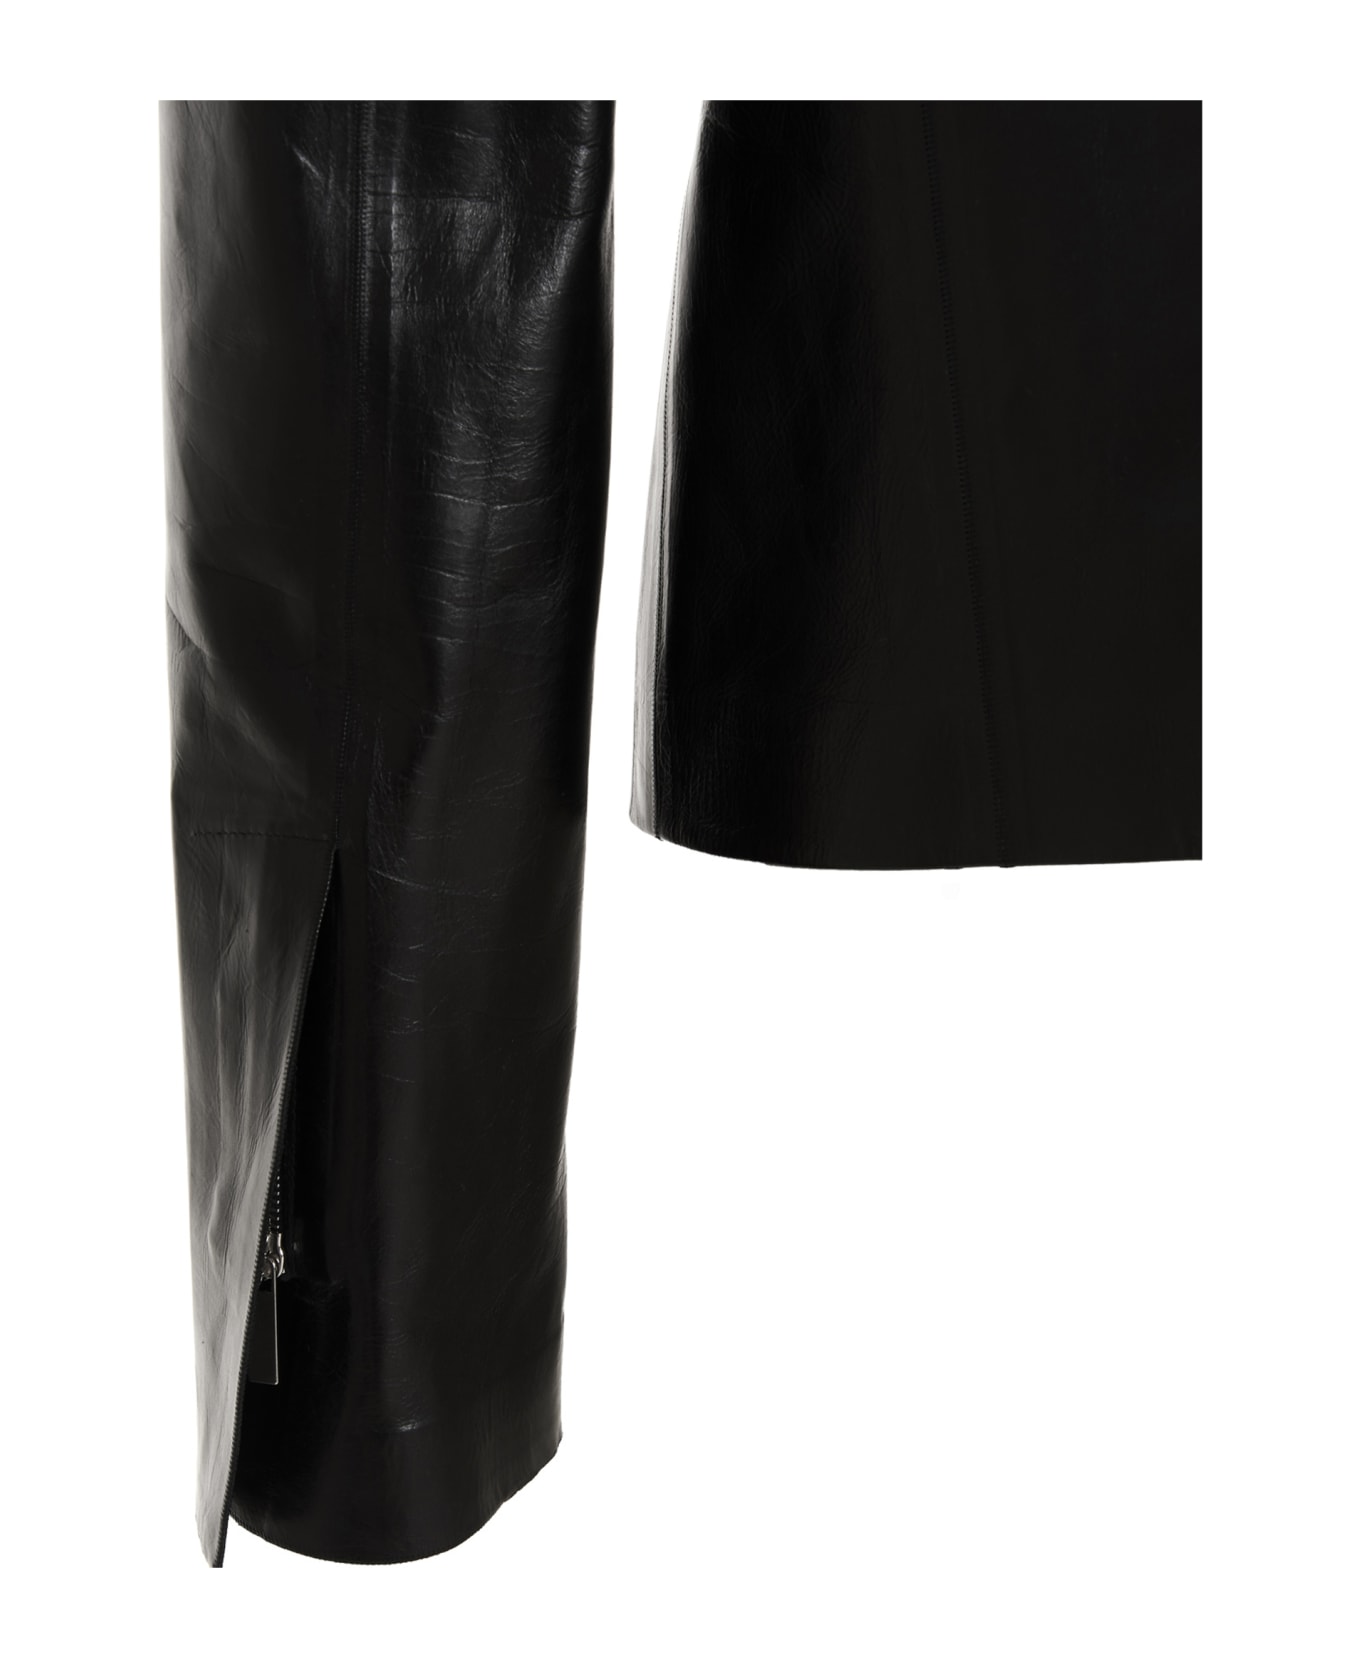 Sapio Leather Jacket - Black  